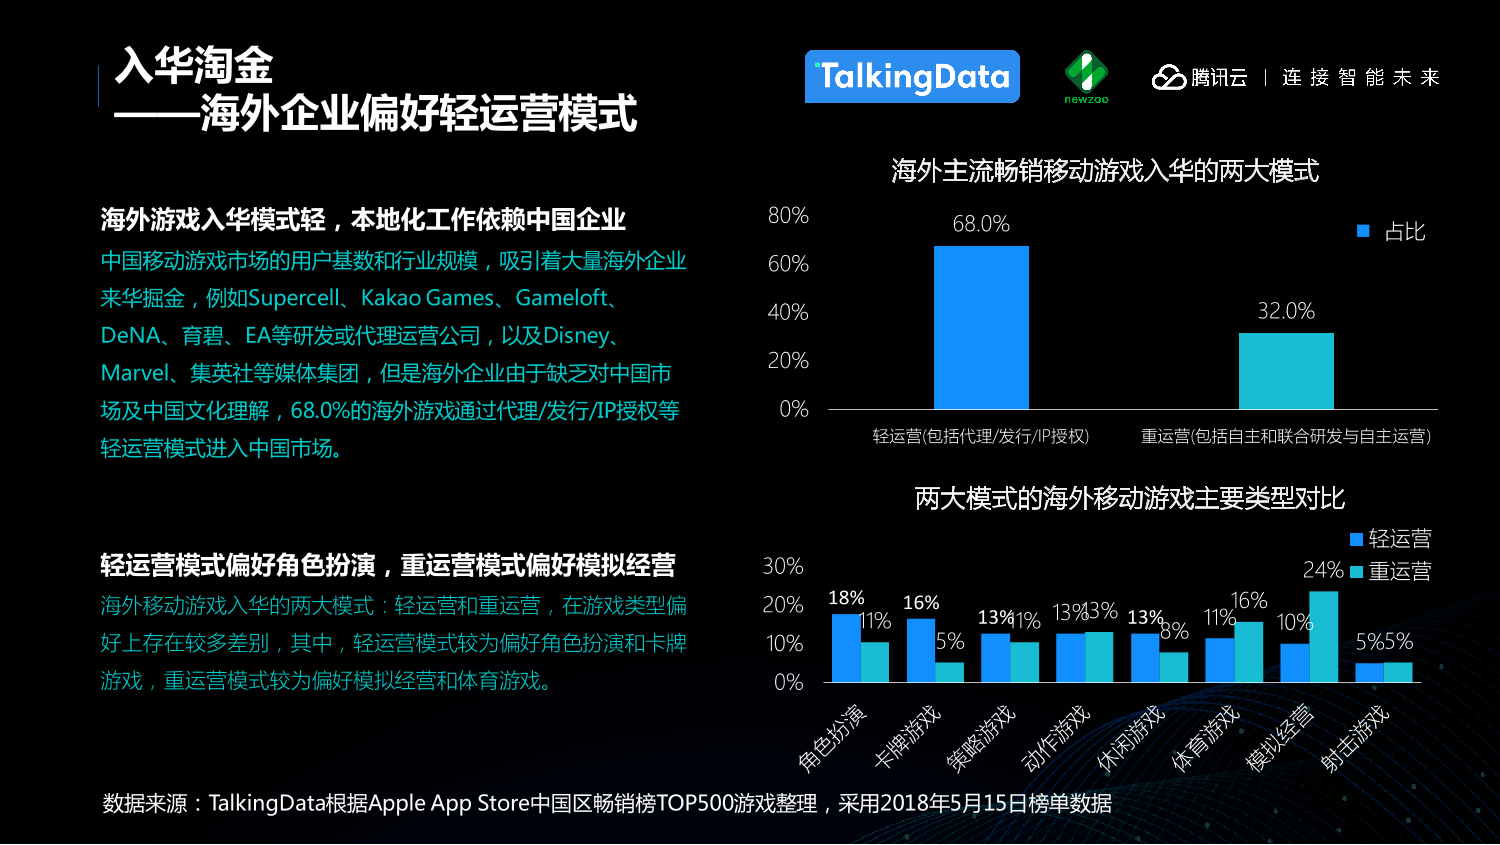 中国移动游戏行业趋势报告_1527559577212-15